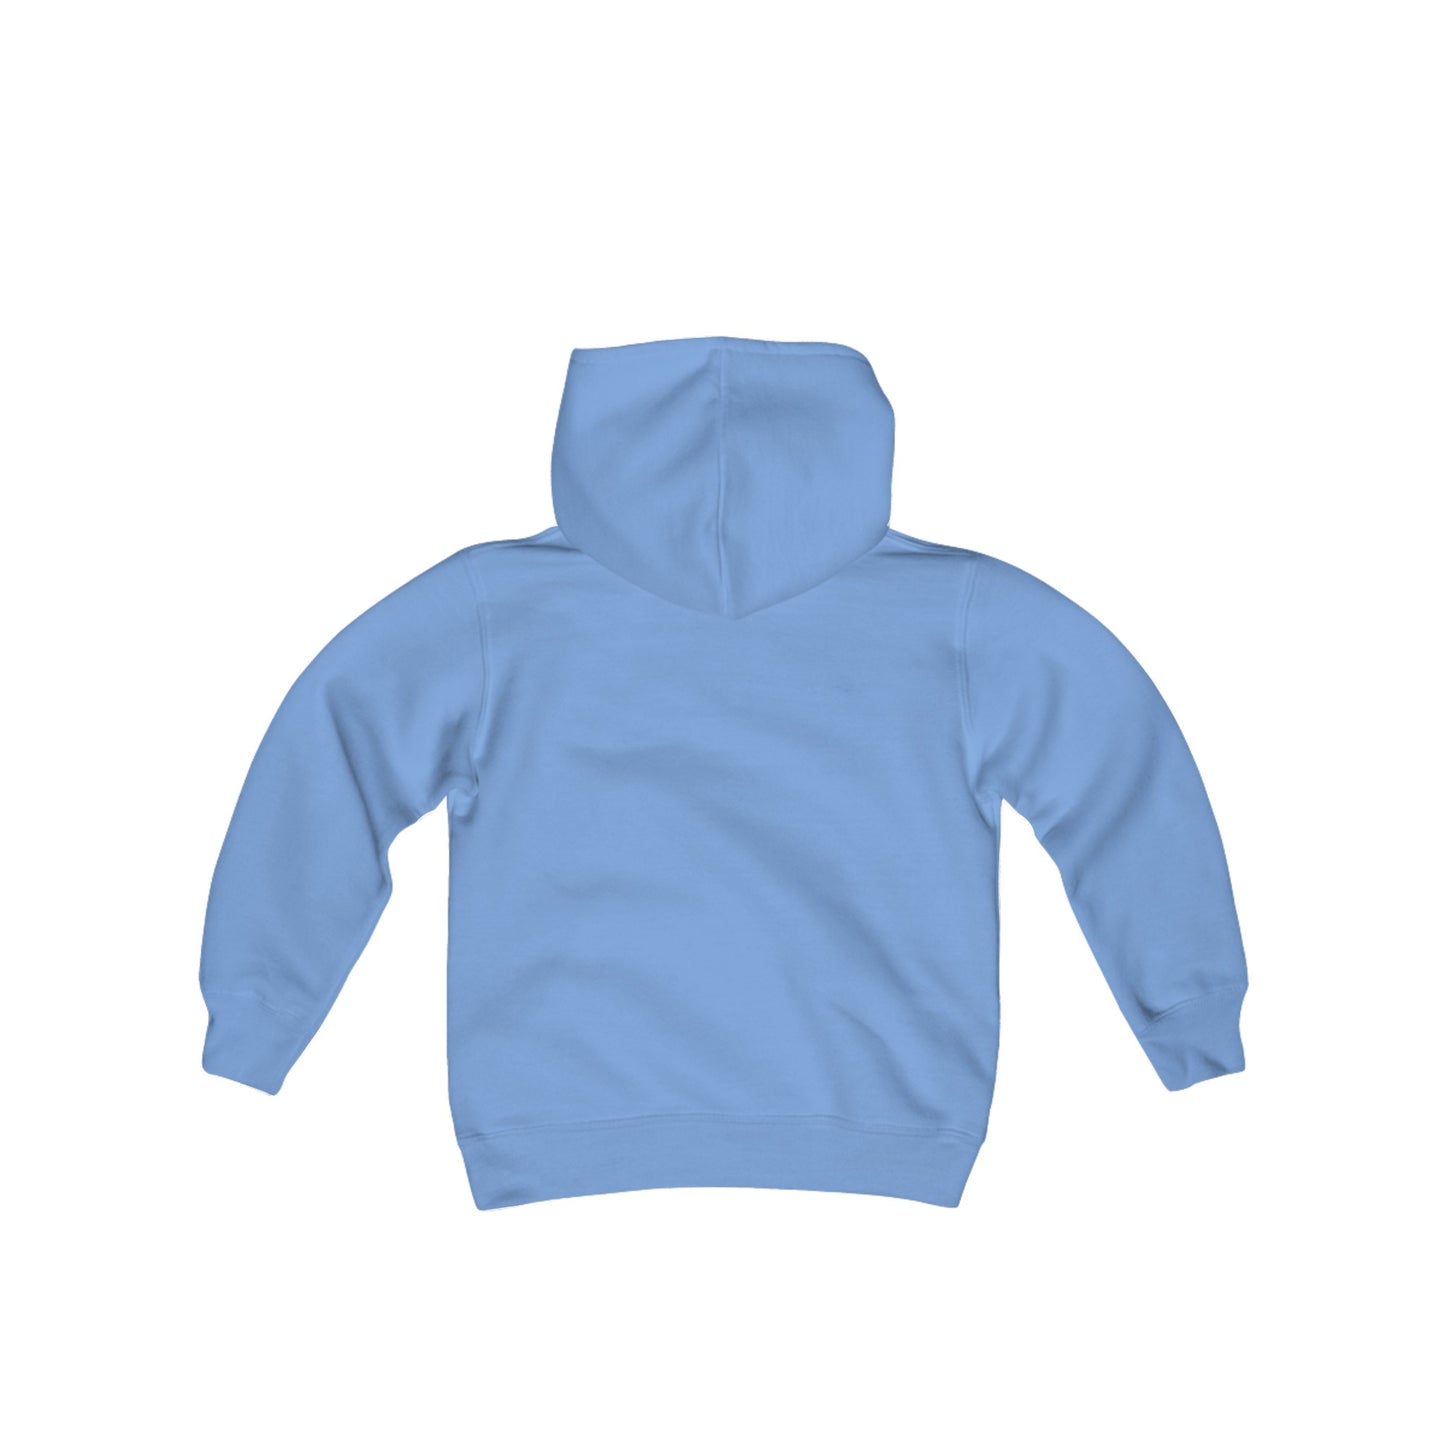 Get Lost Kids Hooded Sweatshirt